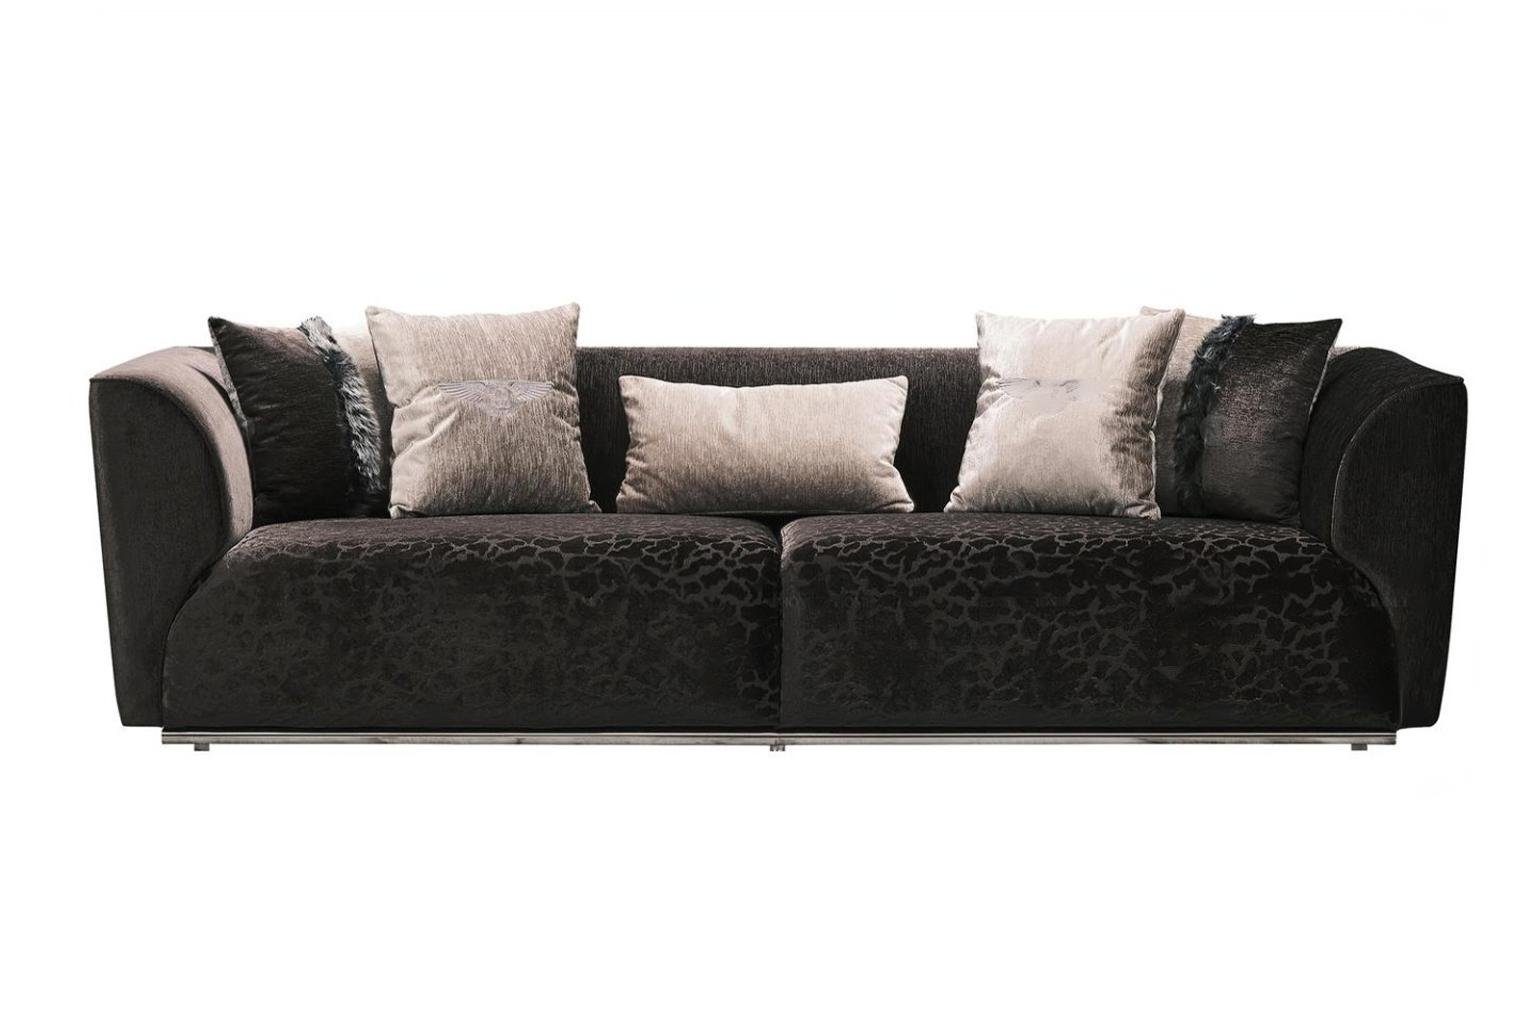 JVmoebel 3-Sitzer Dreisitzer Sofa 3 Sitzer Polstersofa Moderne Sofas Schwarz, 1 Teile, Made in Europa